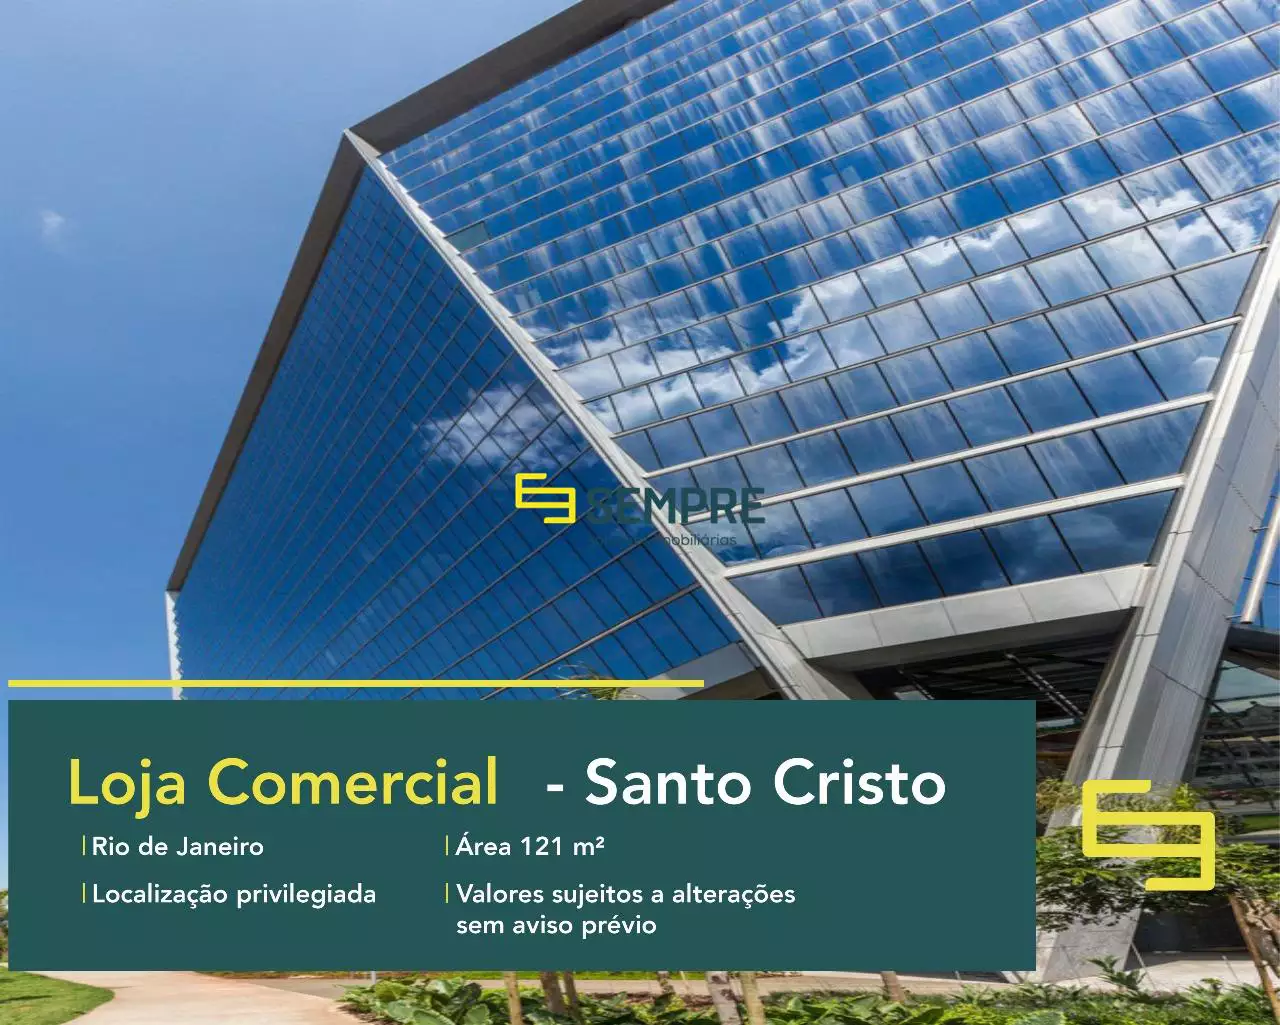 Loja para alugar no AQWA Corporate - Rio de Janeiro, excelente localização. O estabelecimento comercial conta com área de 121 m².